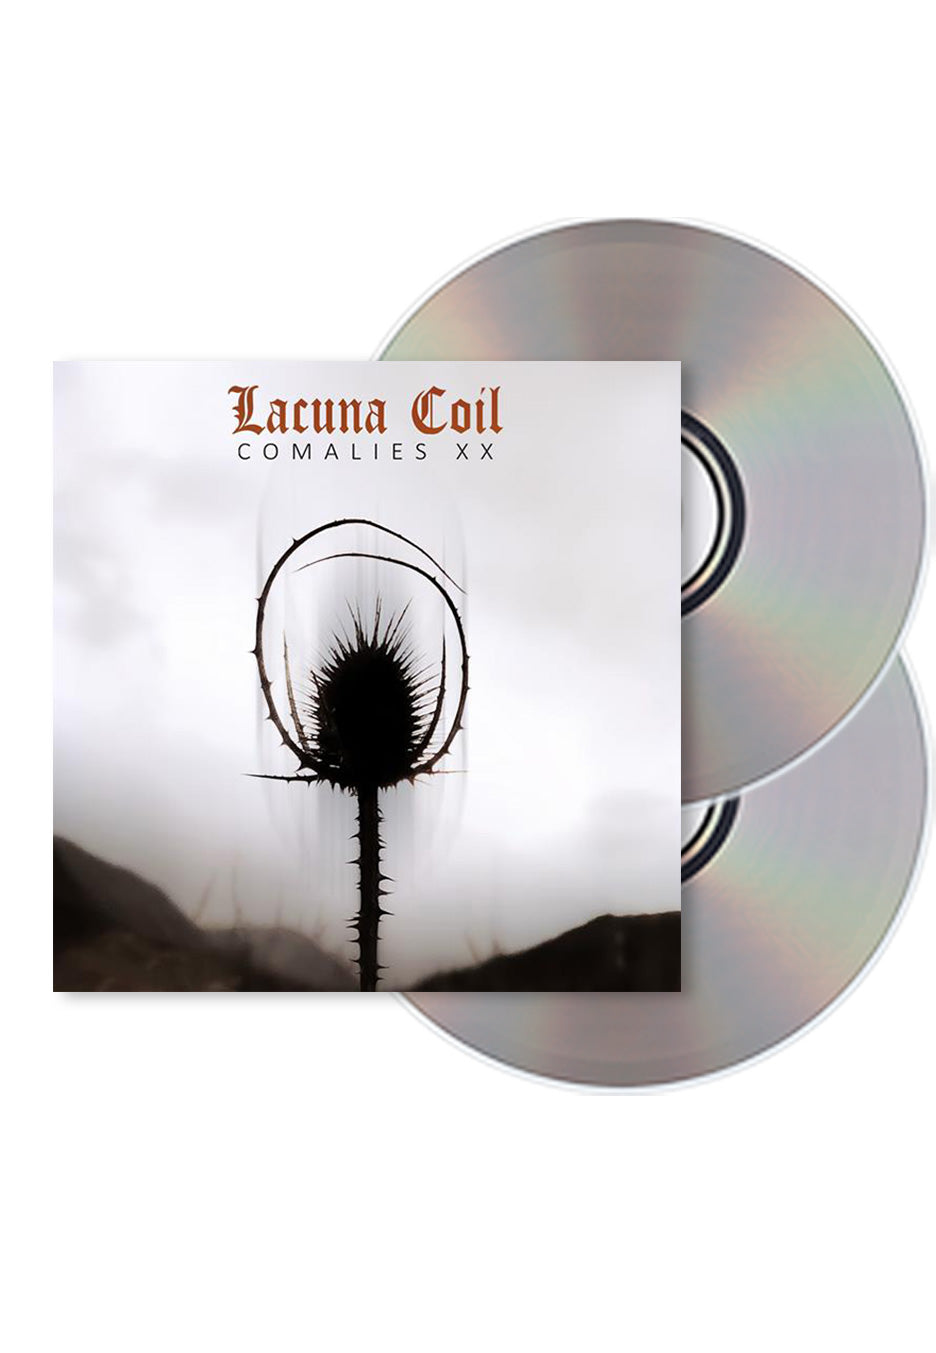 Lacuna Coil - Comalies XX - 2 CD